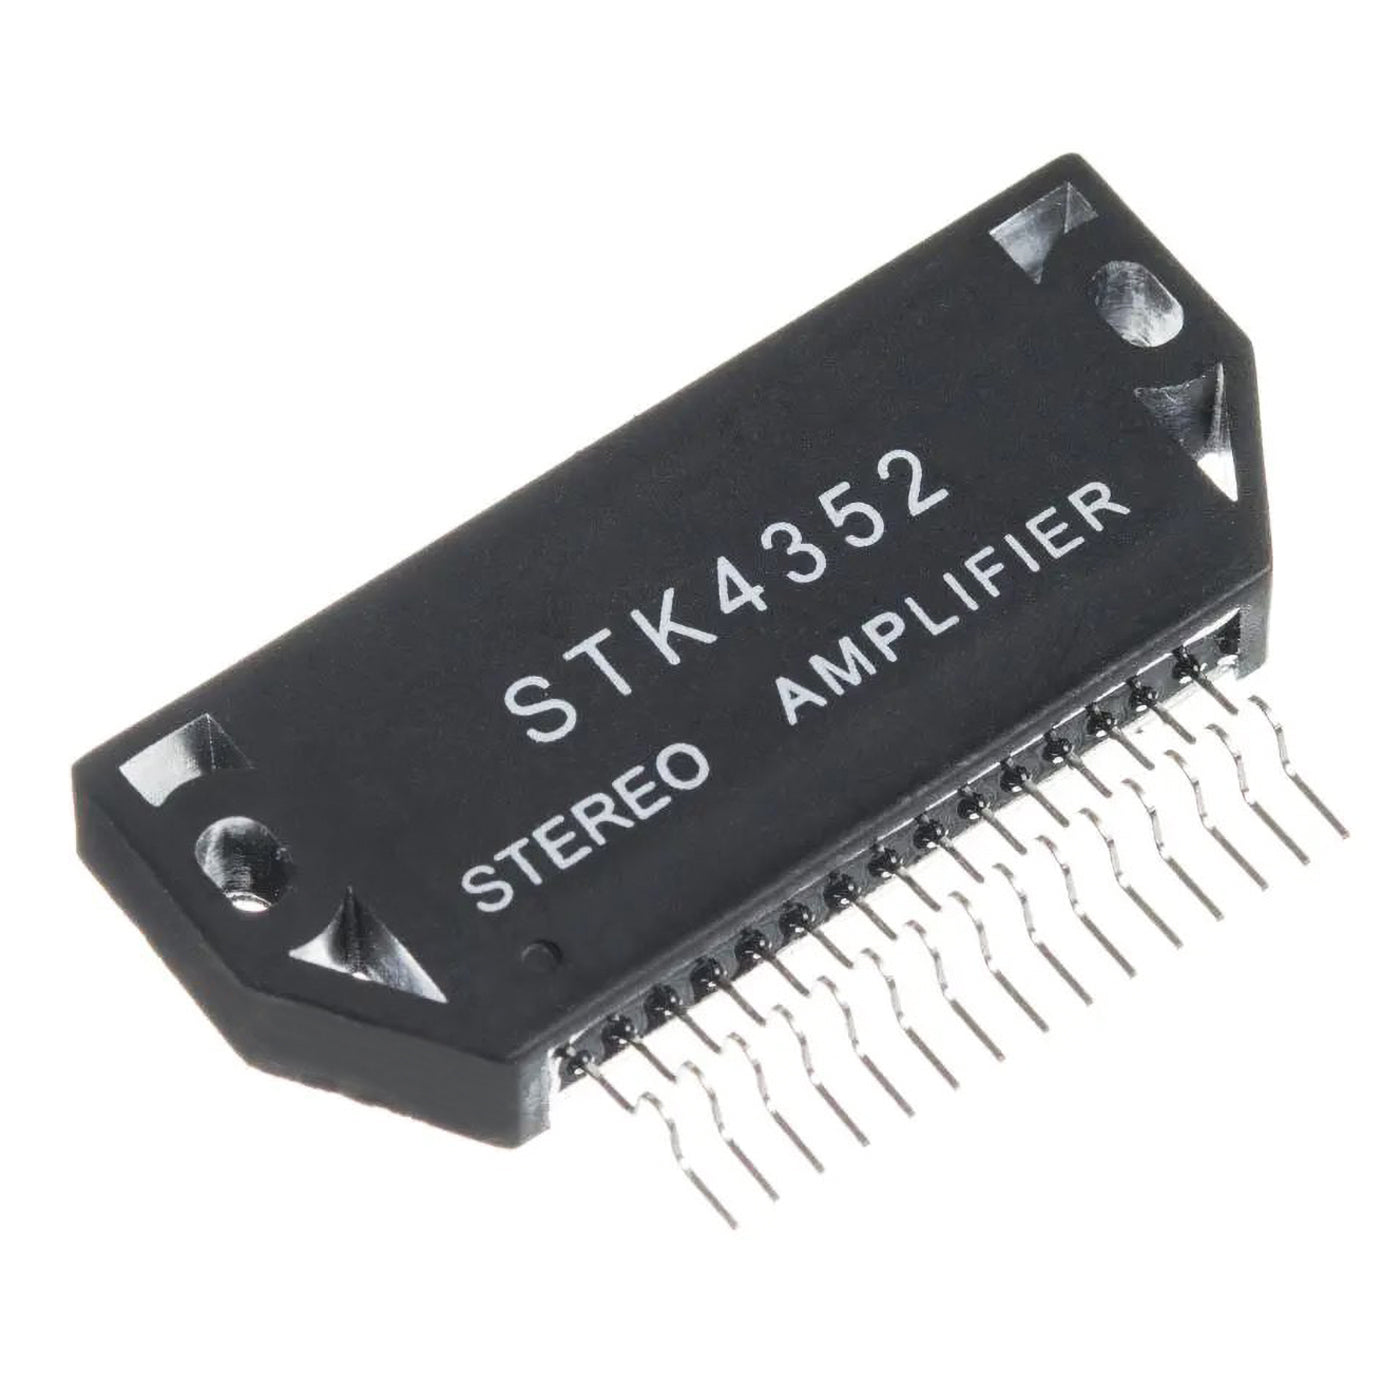 STK4352 componente elettronico, circuito integrato, transistor, stereo amplifier, 15 contatti